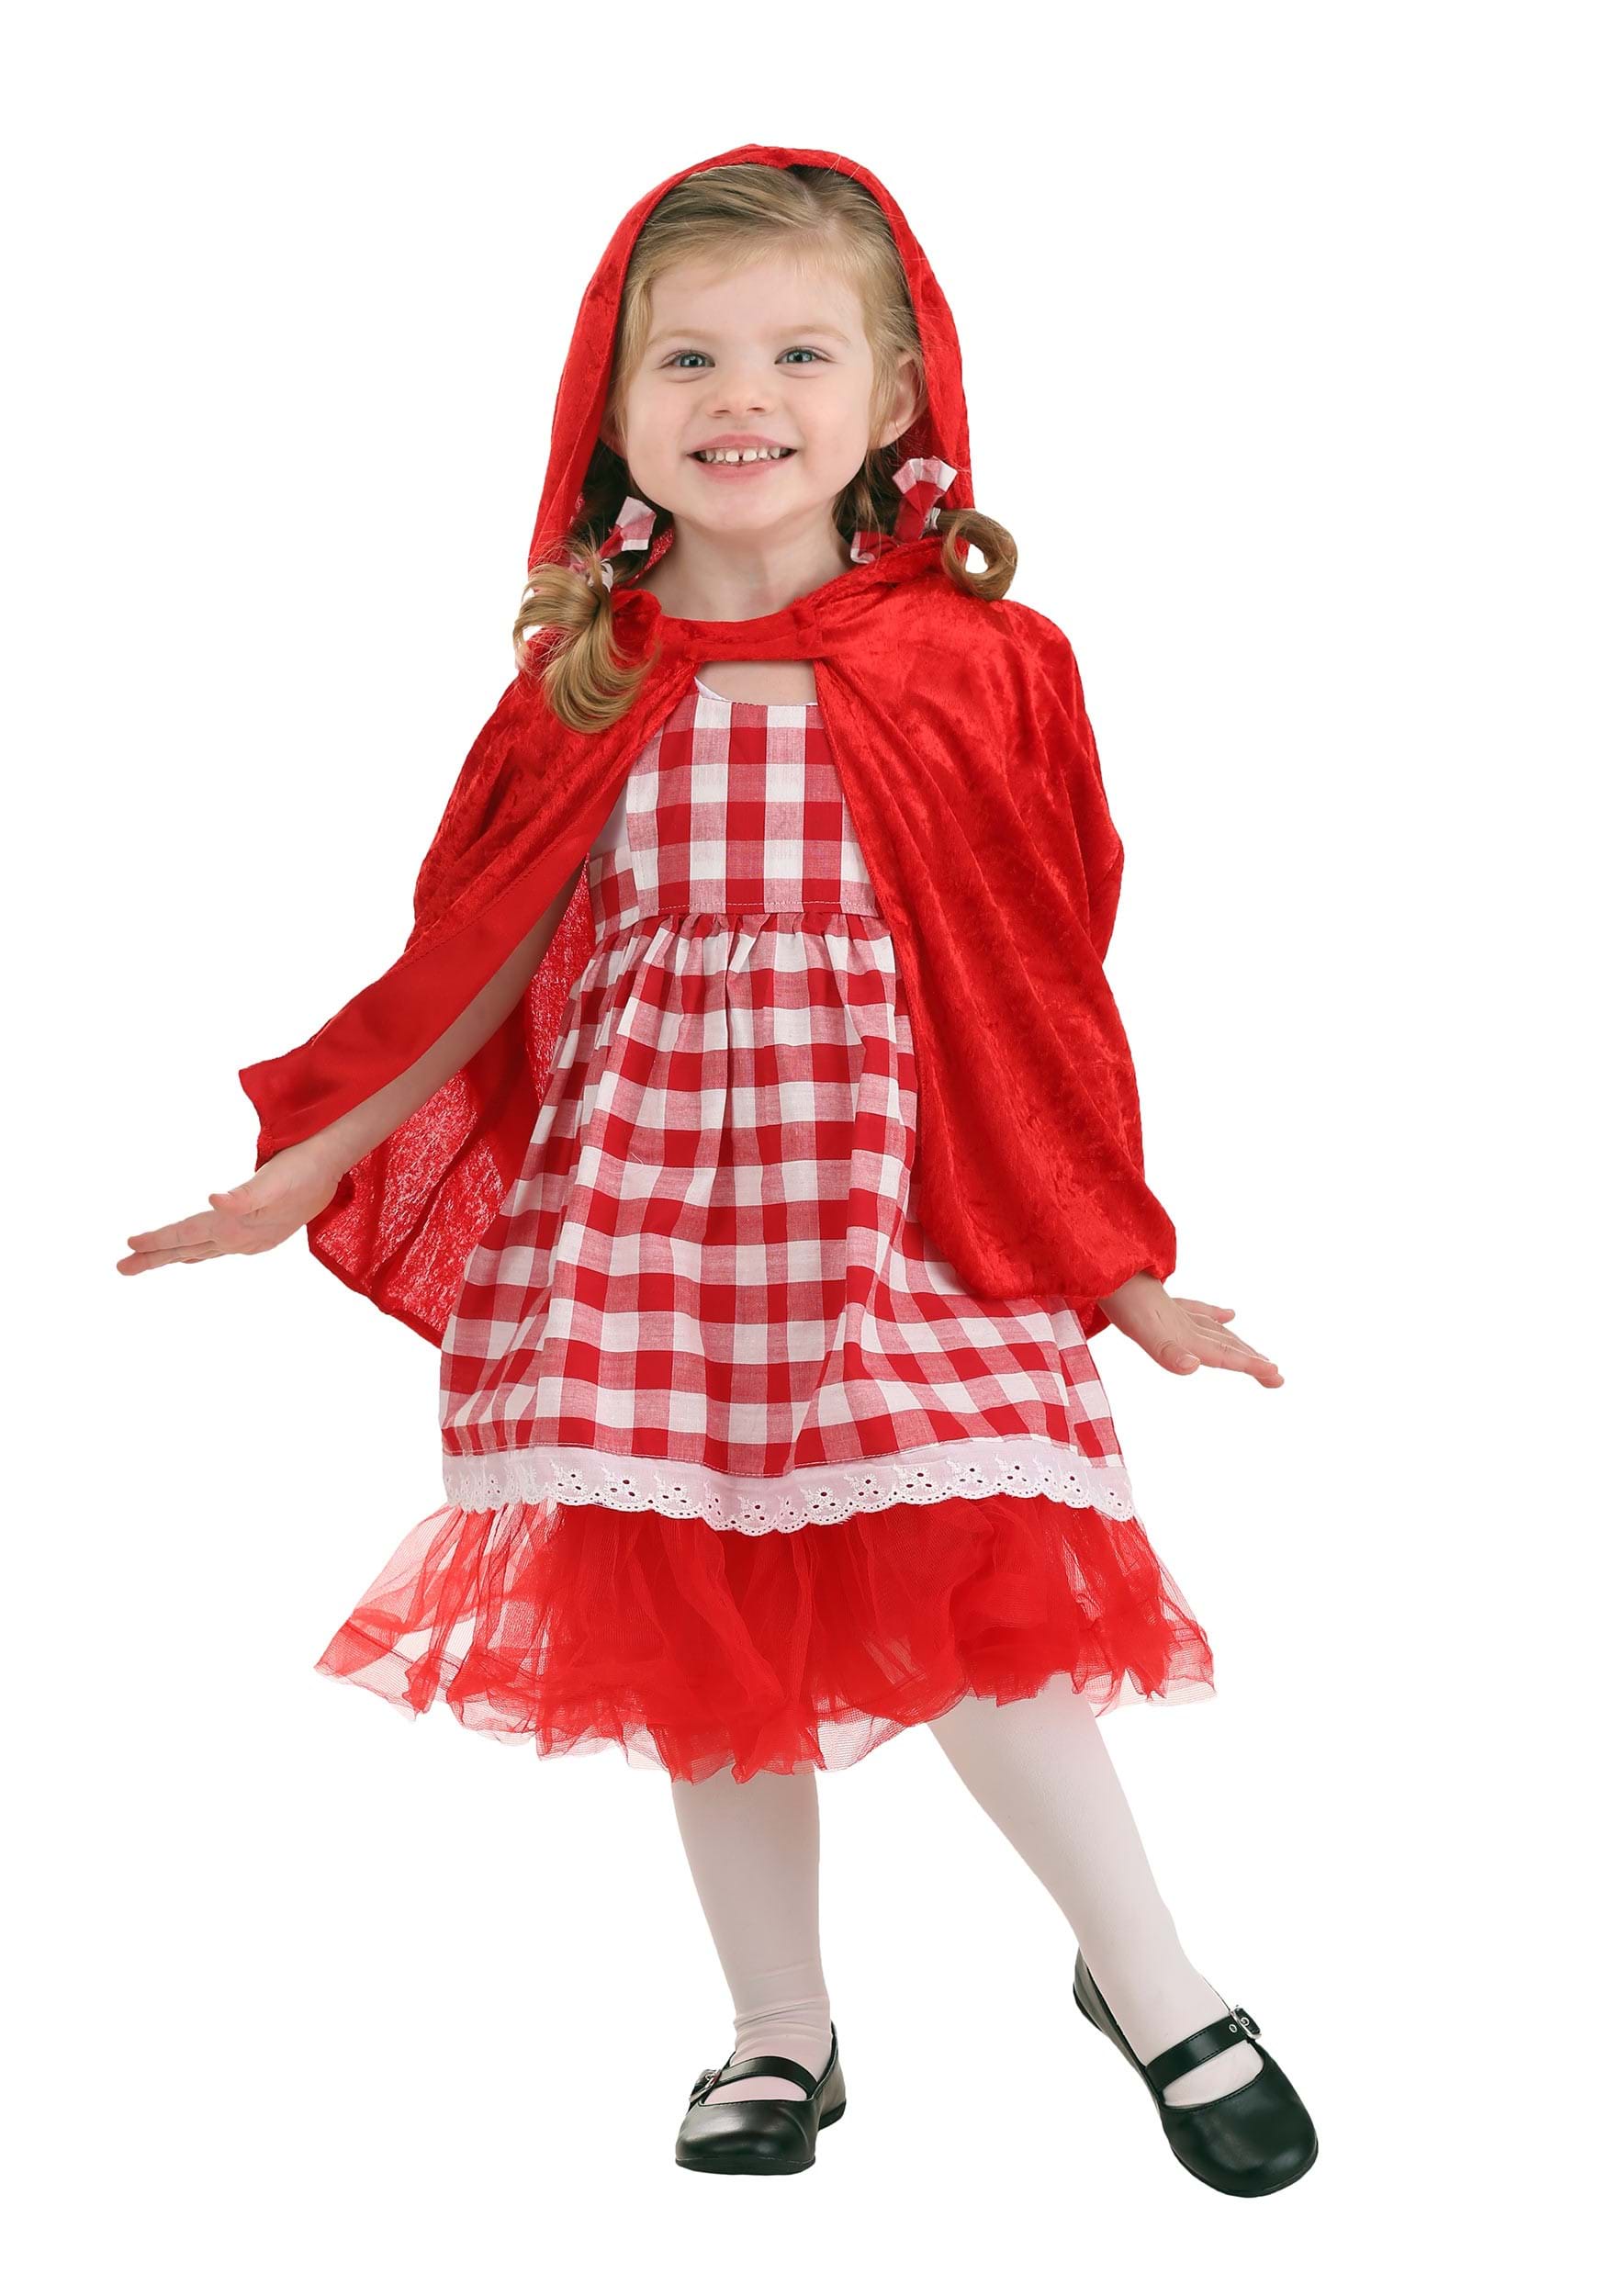 Photos - Fancy Dress Toddler FUN Costumes  Red Riding Hood Tutu Girls Costume Red/White FUN0 